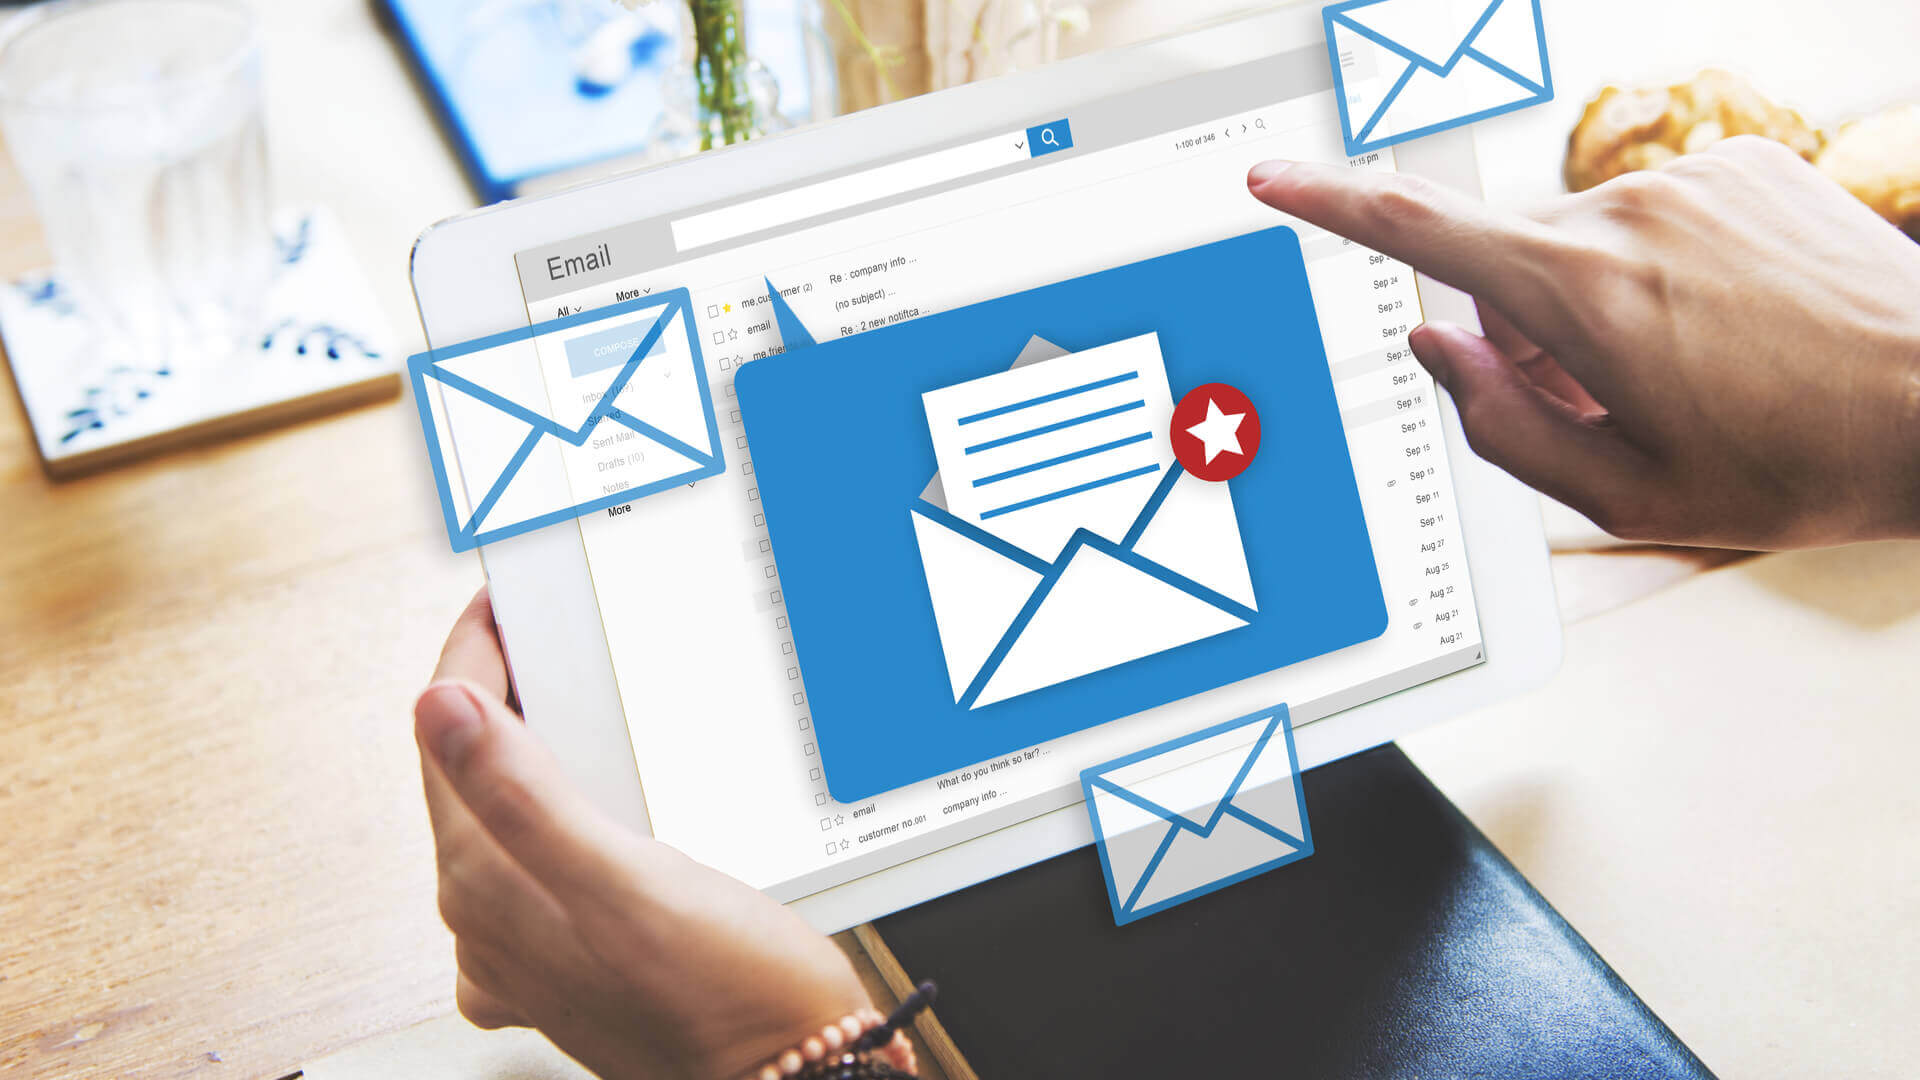 El informe Benchmark de marketing por correo electrónico muestra que las líneas de asunto personalizadas tienen un rendimiento inferior